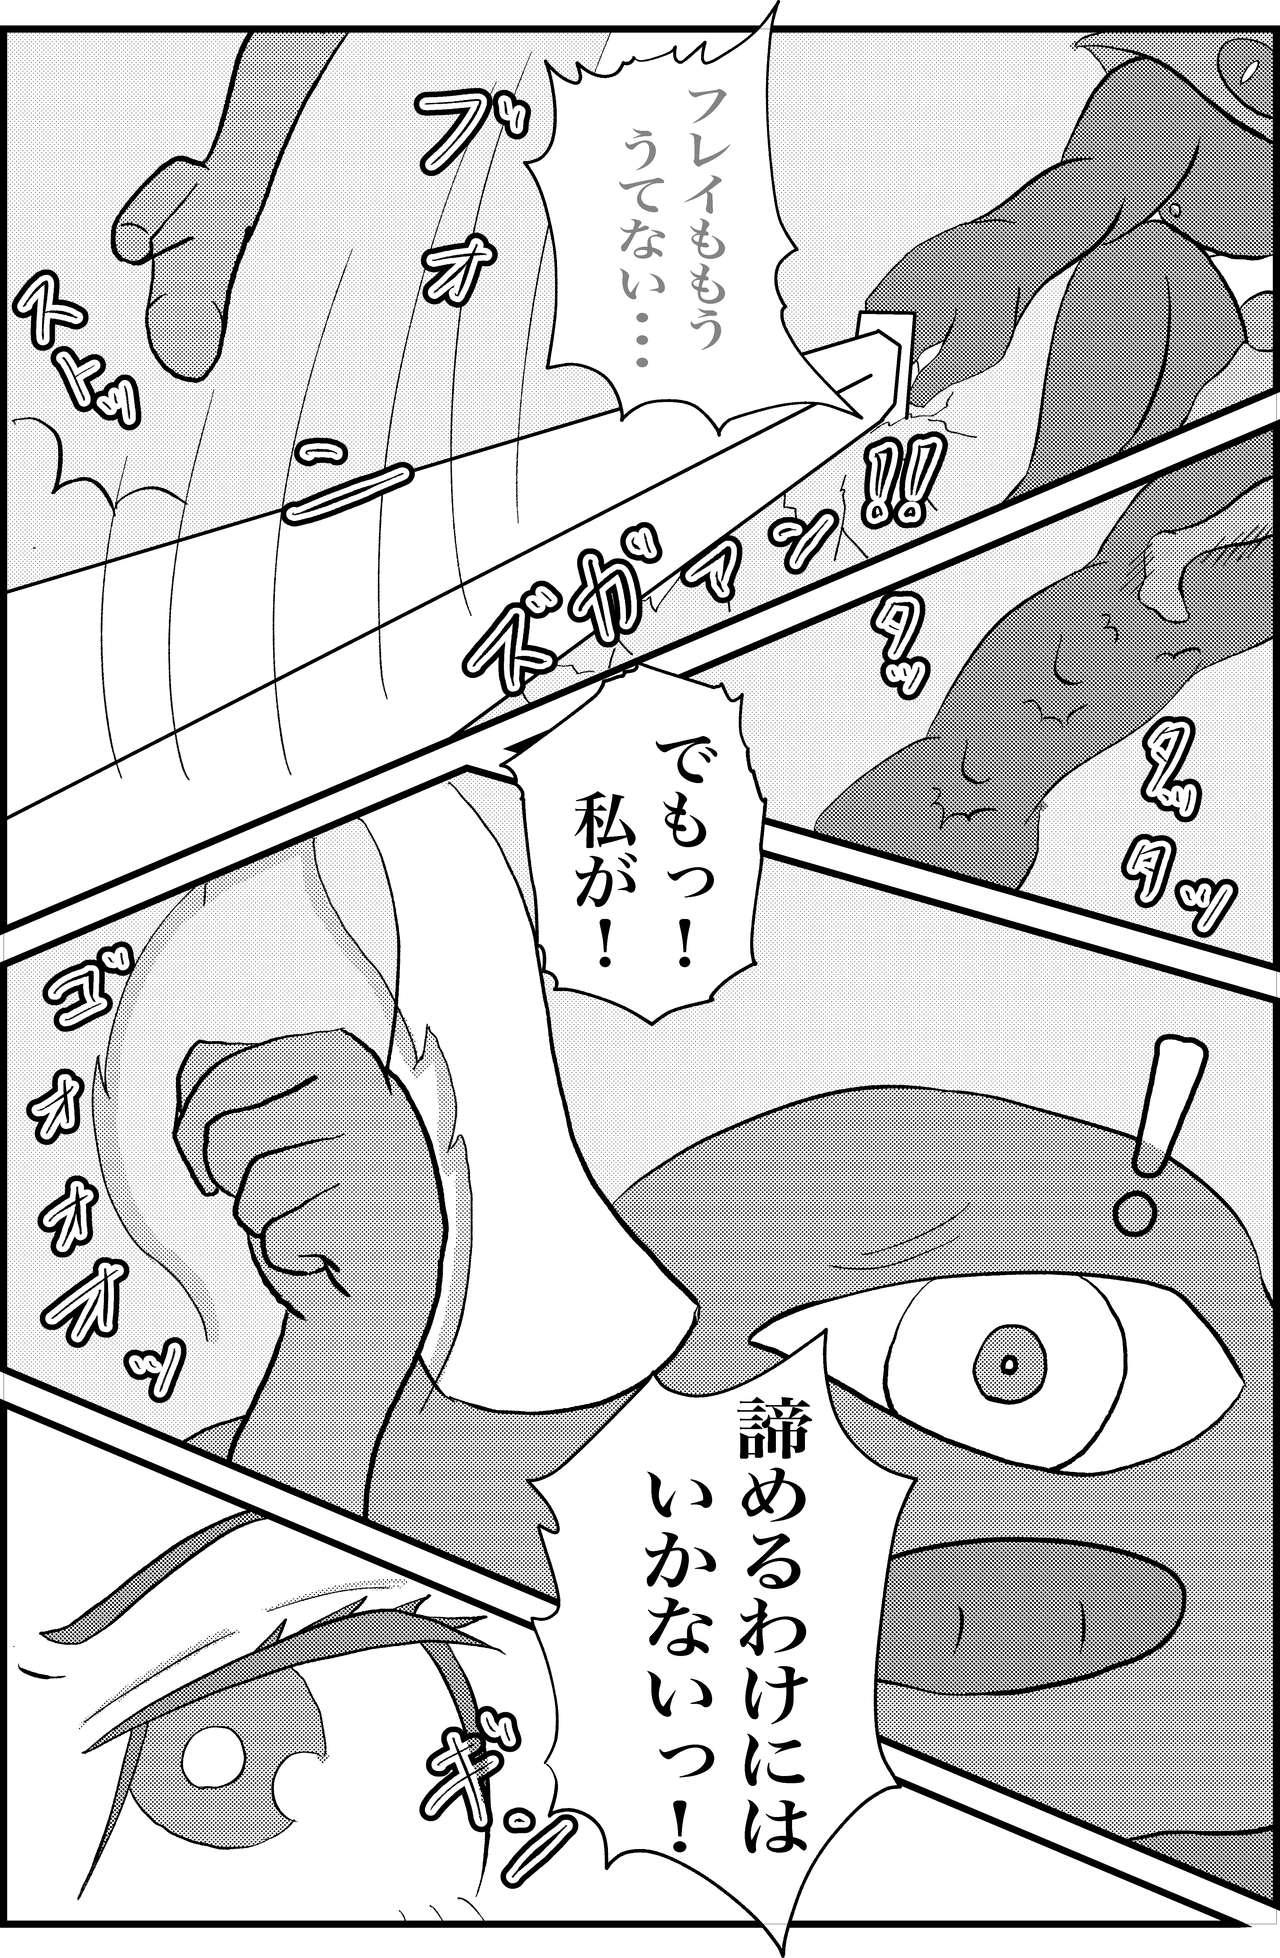 Pee Kokoro no Kaitoudan VS Jakuten Debuff Kusuguri Jigoku - Persona 5 Bang Bros - Page 5